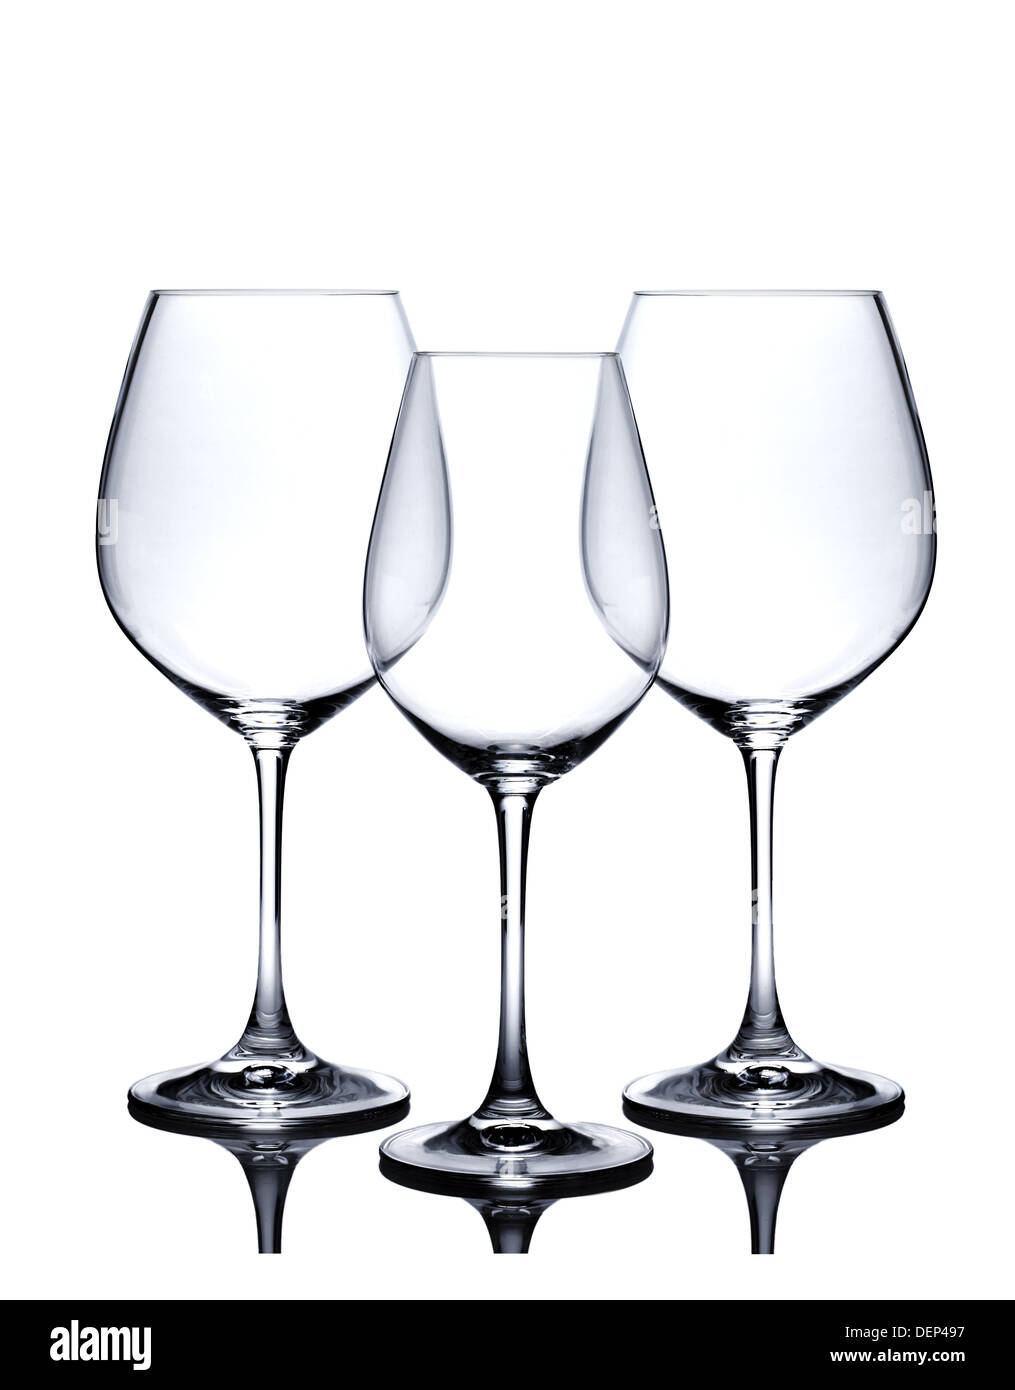 https://c8.alamy.com/compes/dep497/set-de-vidrio-de-coctel-vaciar-los-vasos-de-vino-rojo-y-blanco-aislado-sobre-fondo-blanco-dep497.jpg